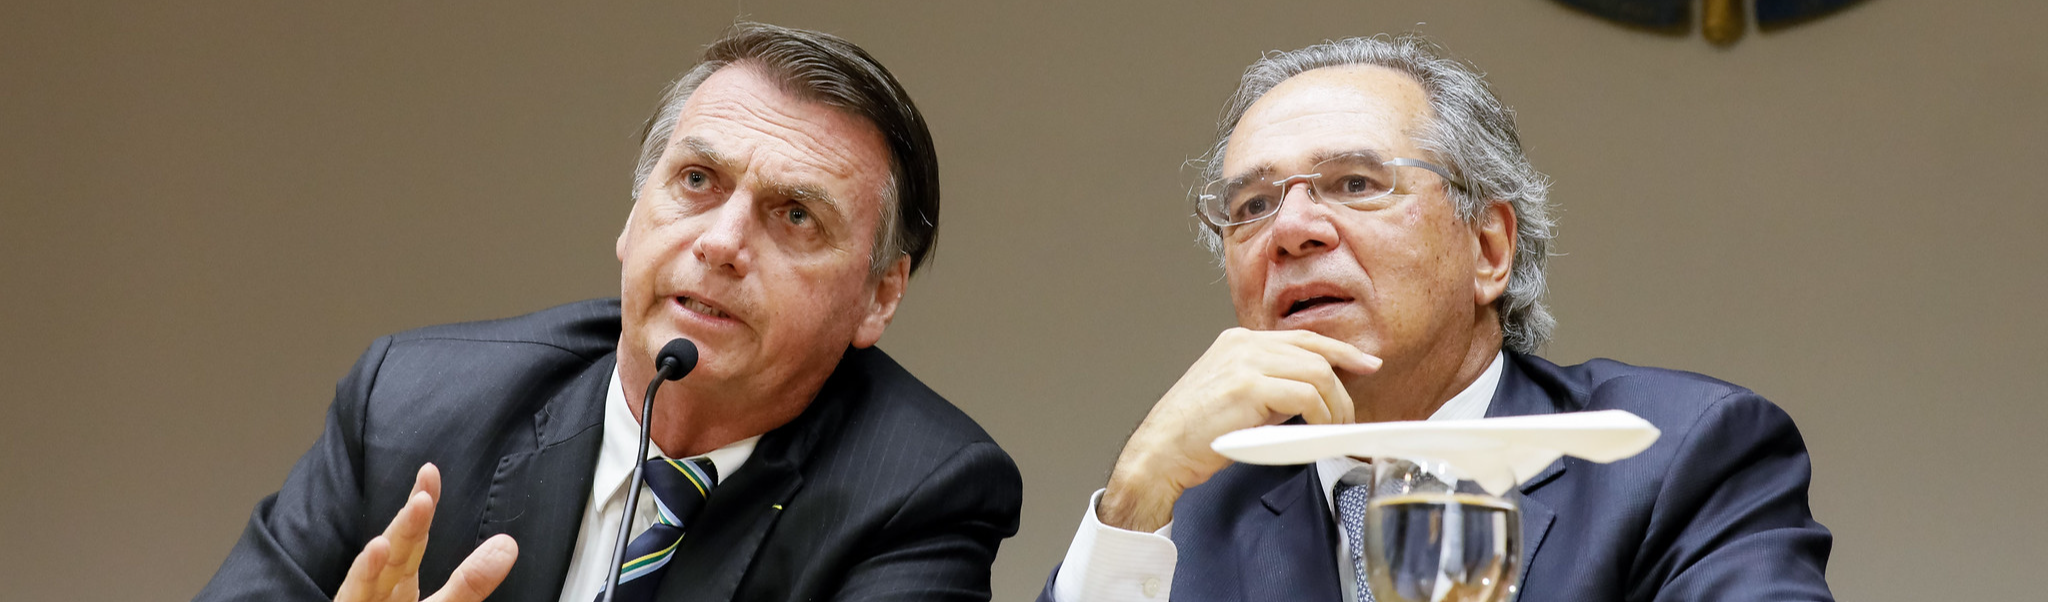 Guedes e Bolsonaro ameaçam tirar trabalhadores dos fundos de pensão e transferir patrimônio aos bancos